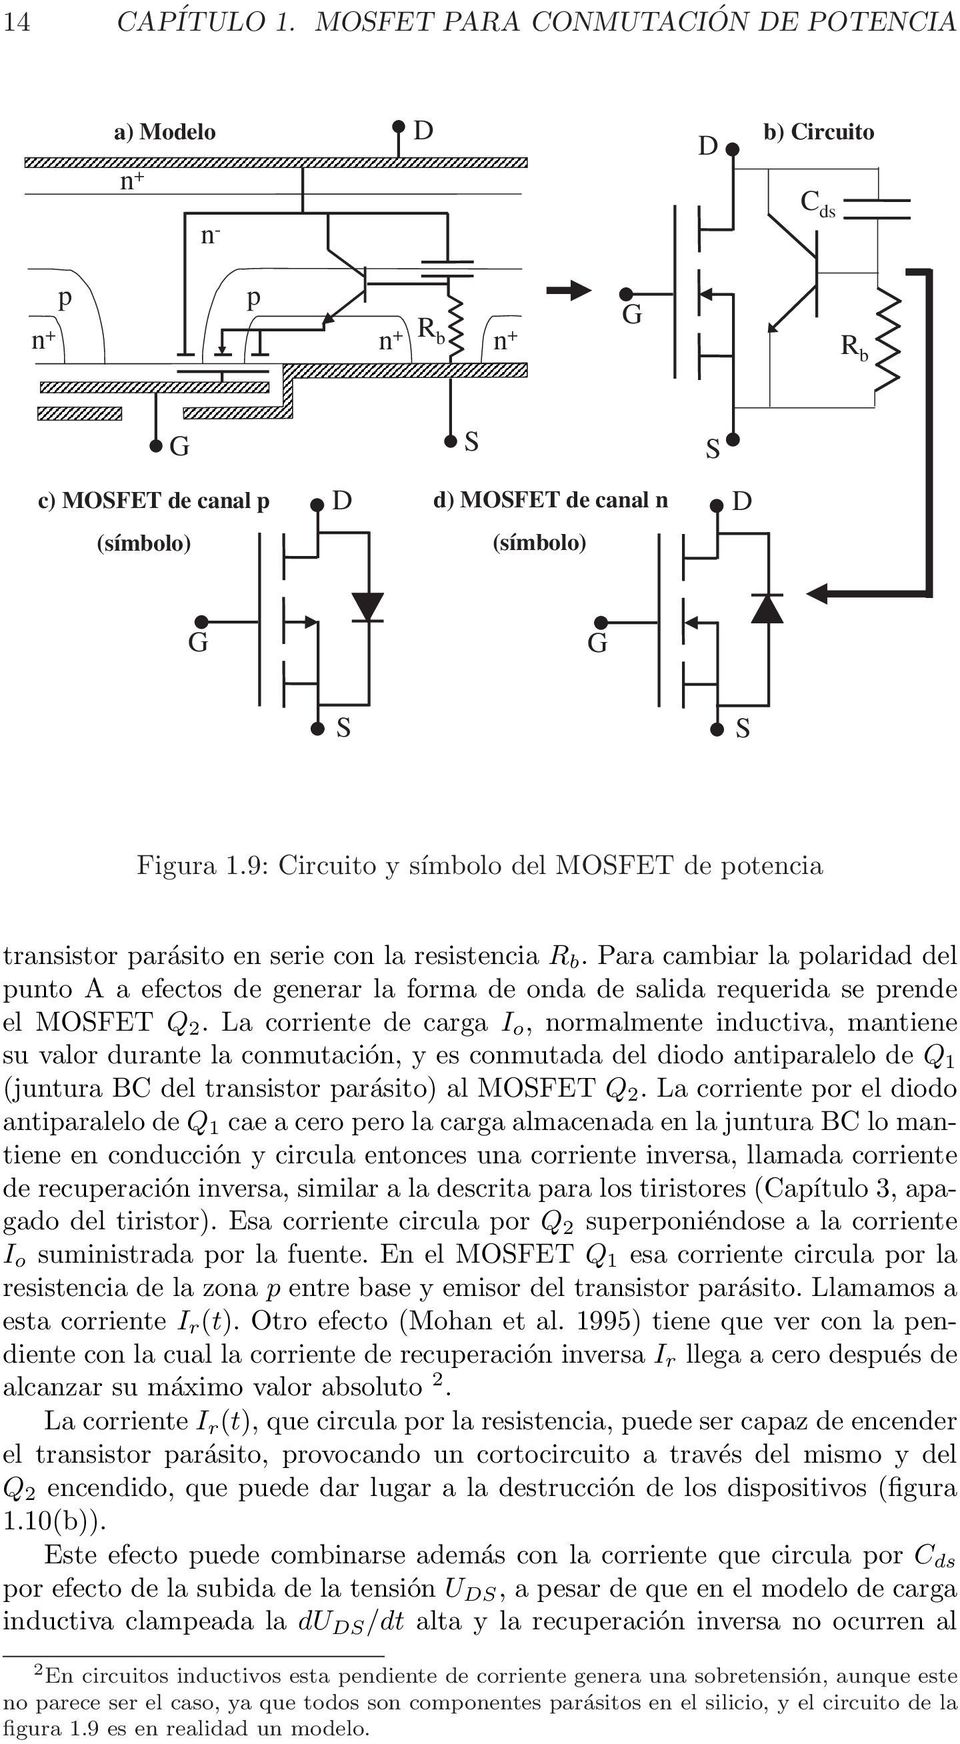 Para cambiar la polaridad del punto A a efectos de generar la forma de onda de salida requerida se prende el MOFET Q 2.